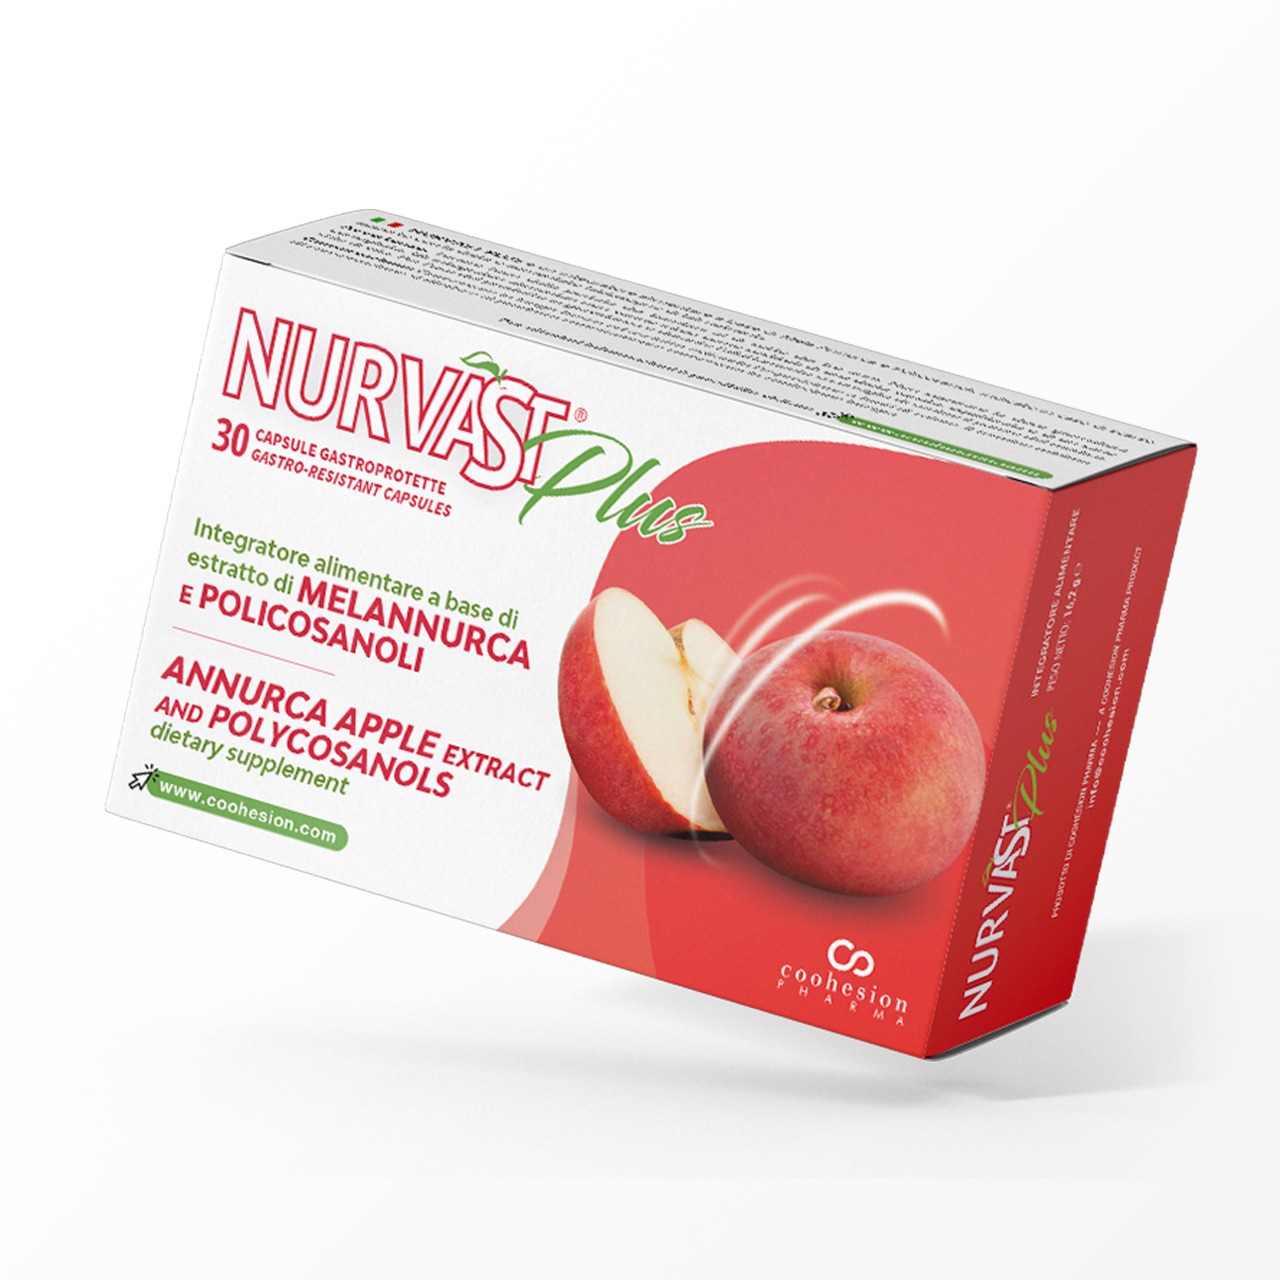 Nurvast Plus - Integratore alimentare a base di estratto di mela Annurca e policosanoli